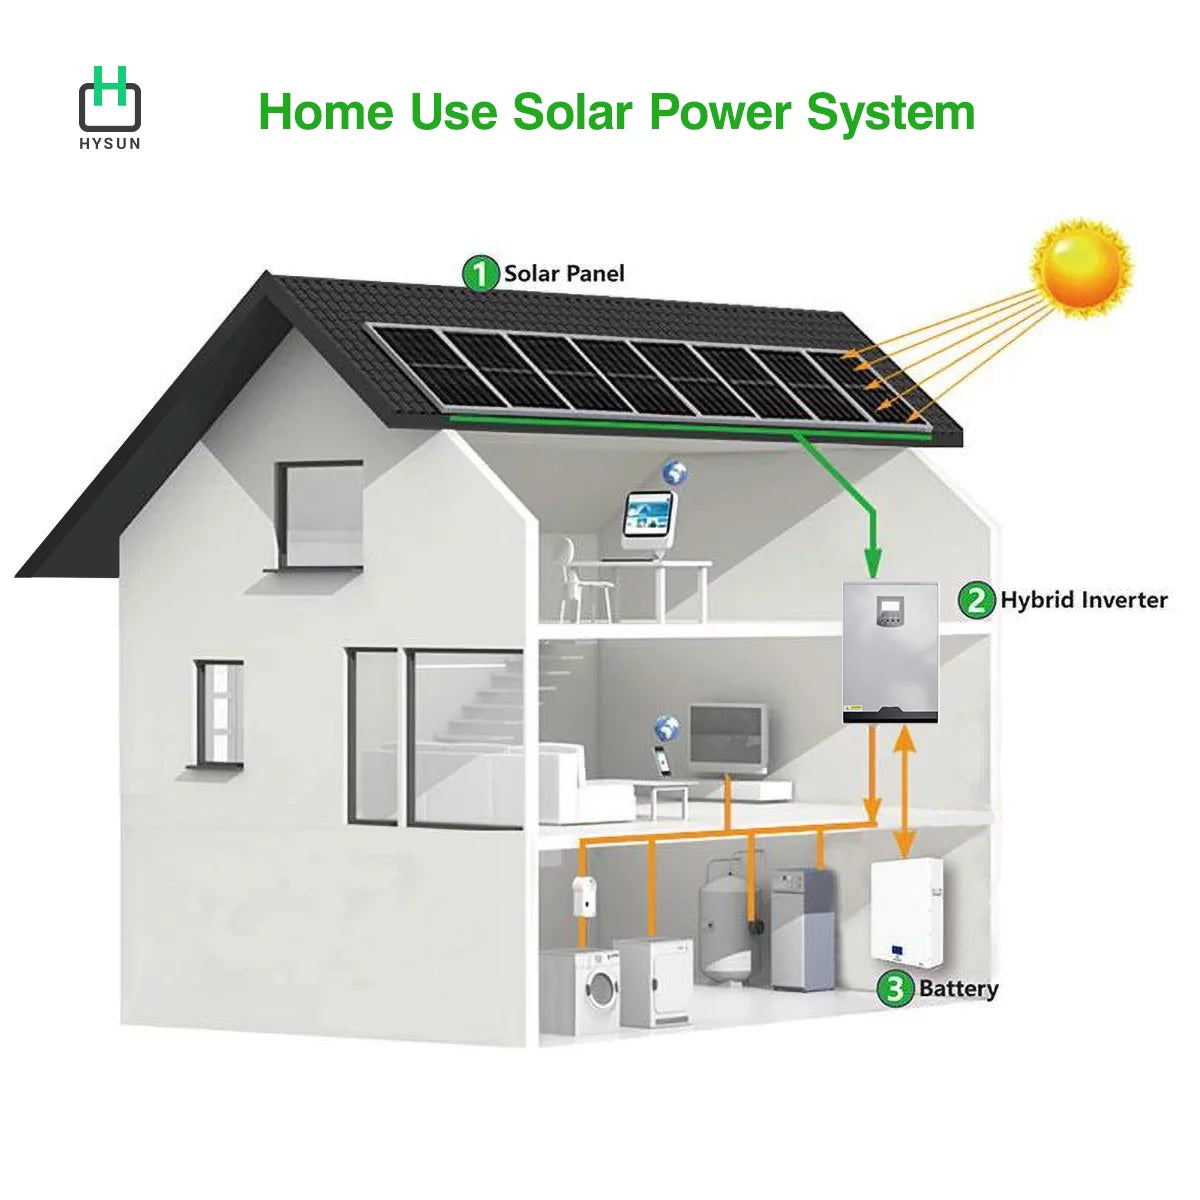 Hysun Home Use Solar Power System